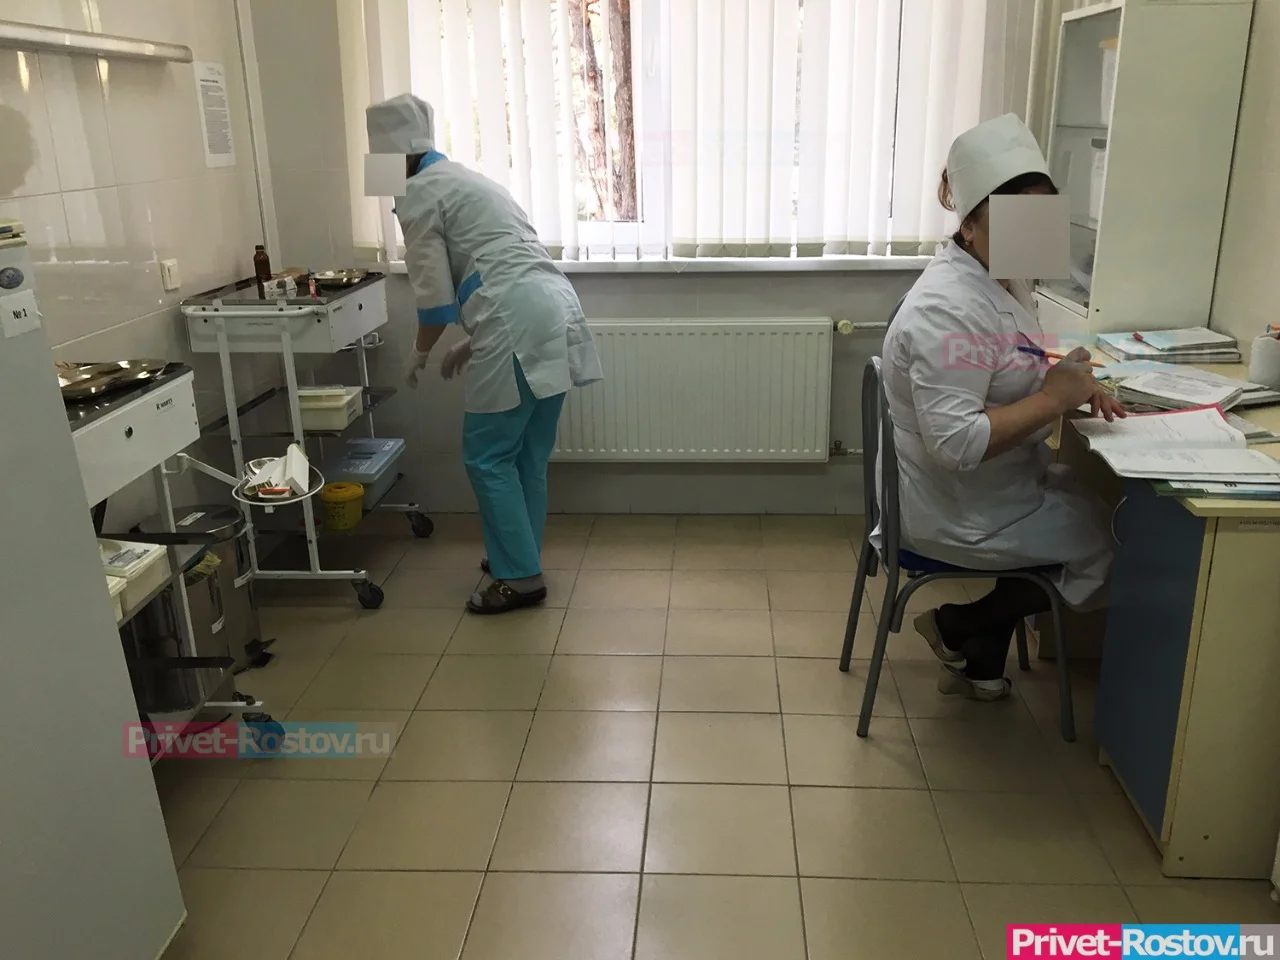 Пять ножевых ранений получил дедушка‚ приведя внучку в школу‚ в Ростовской области